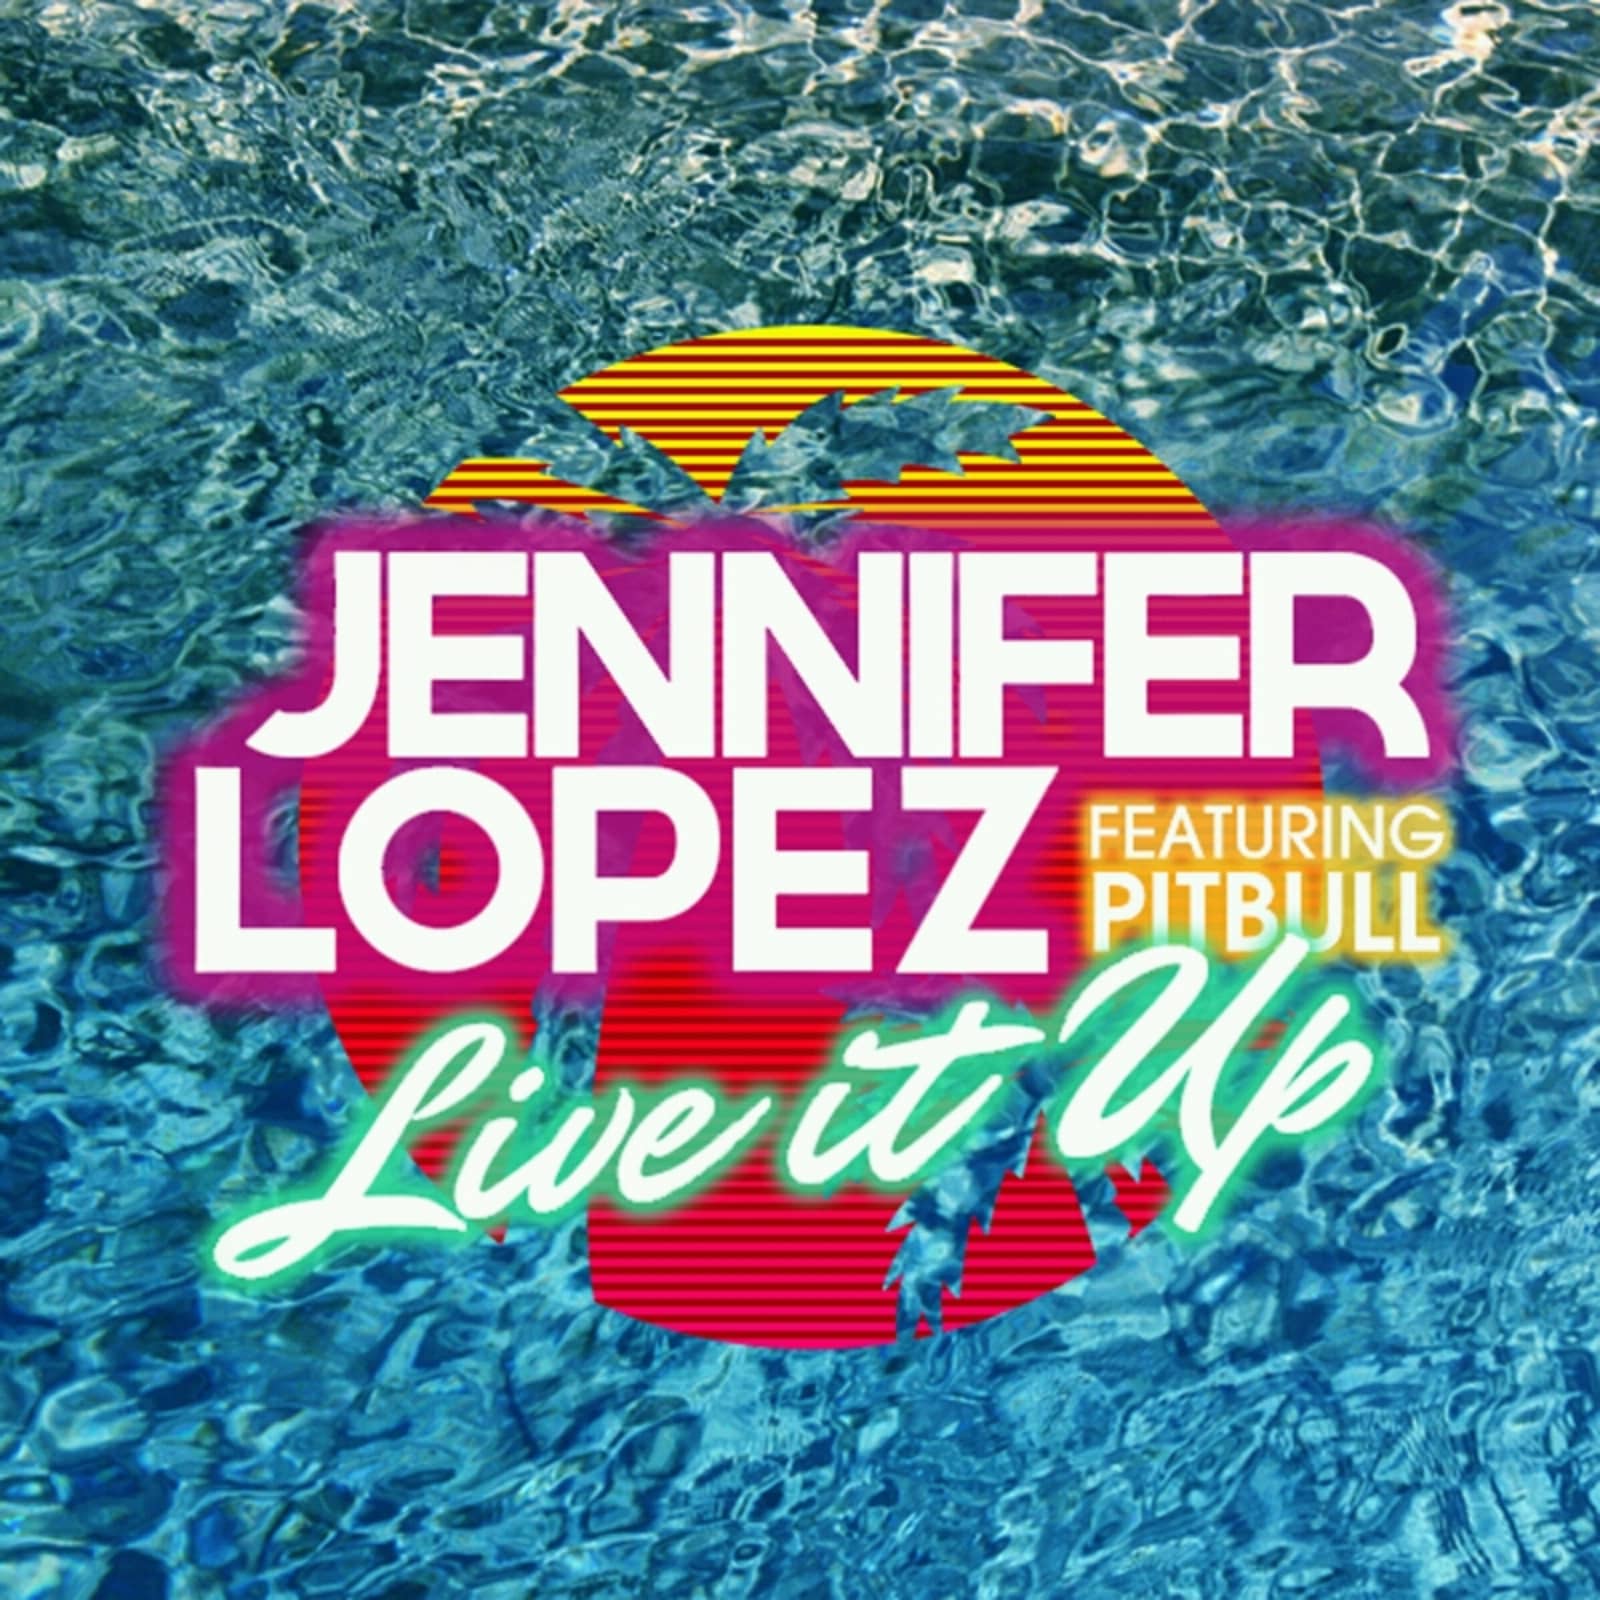 Live it up 2. Jennifer Lopez & Pitbull ~ Live it up. Jennifer Lopez Live it up. Jennifer Lopez feat. 2. Jennifer Lopez feat. Pitbull - Live it up.